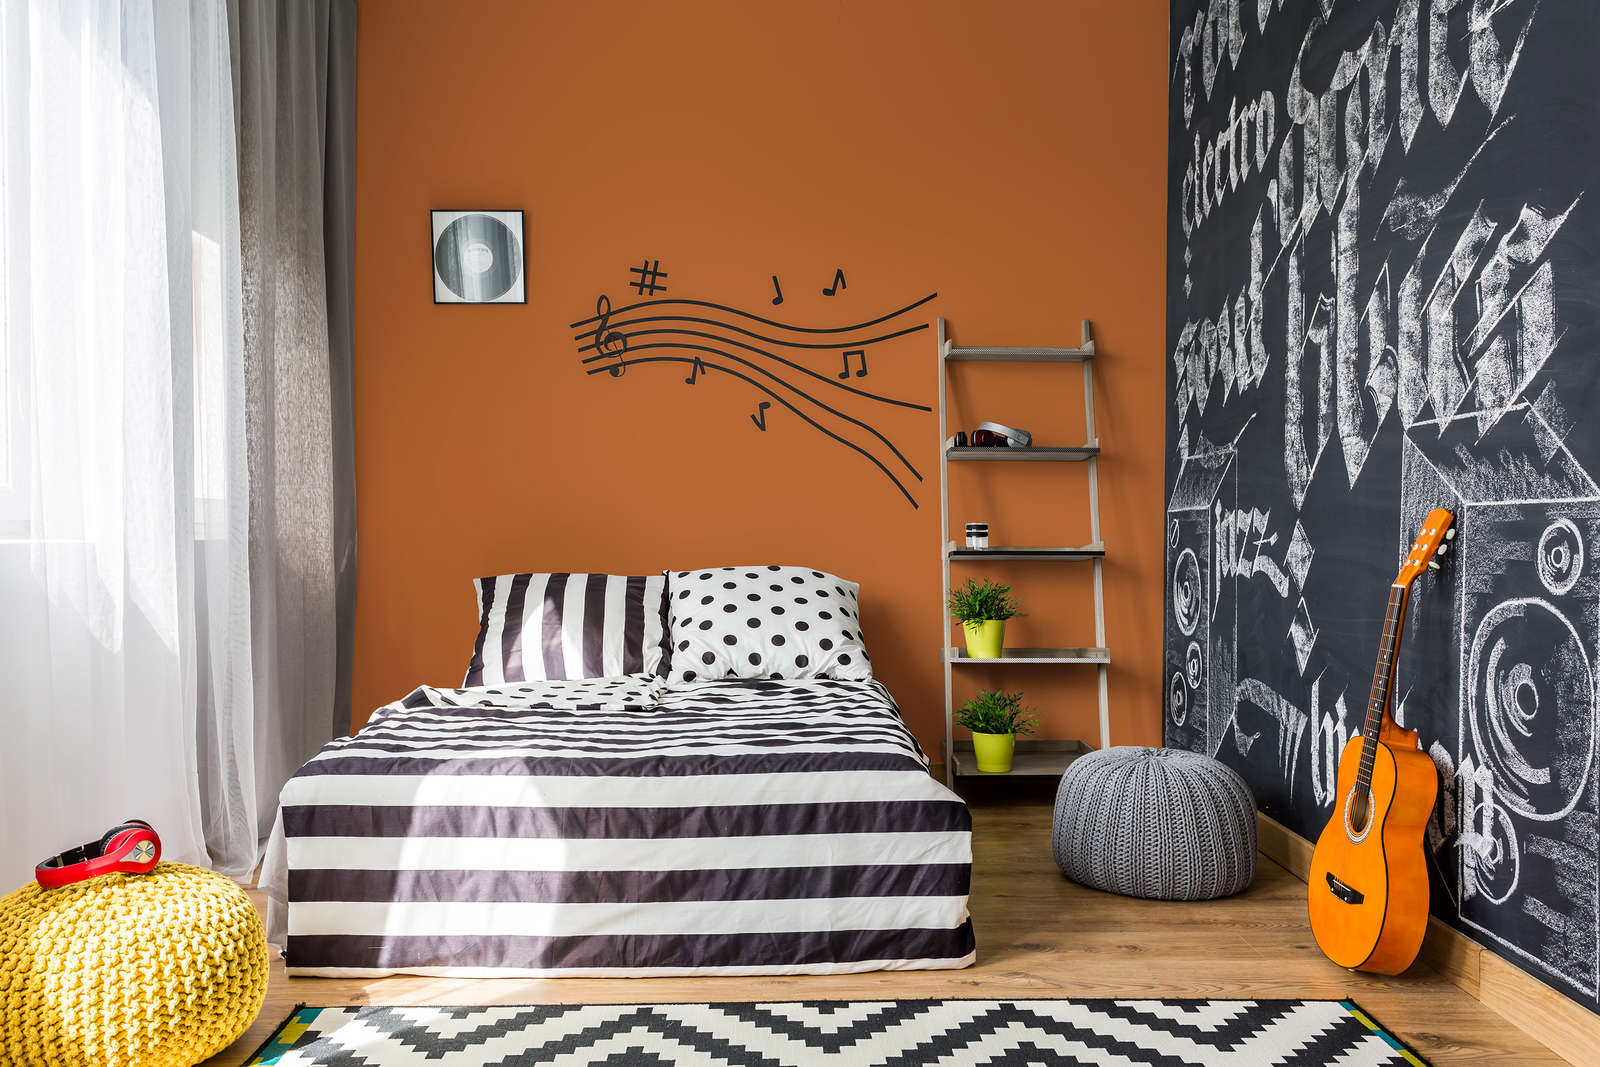             Pittura murale Premium Arancione caldo »Pretty Peach« NW903 – 1 litri
        